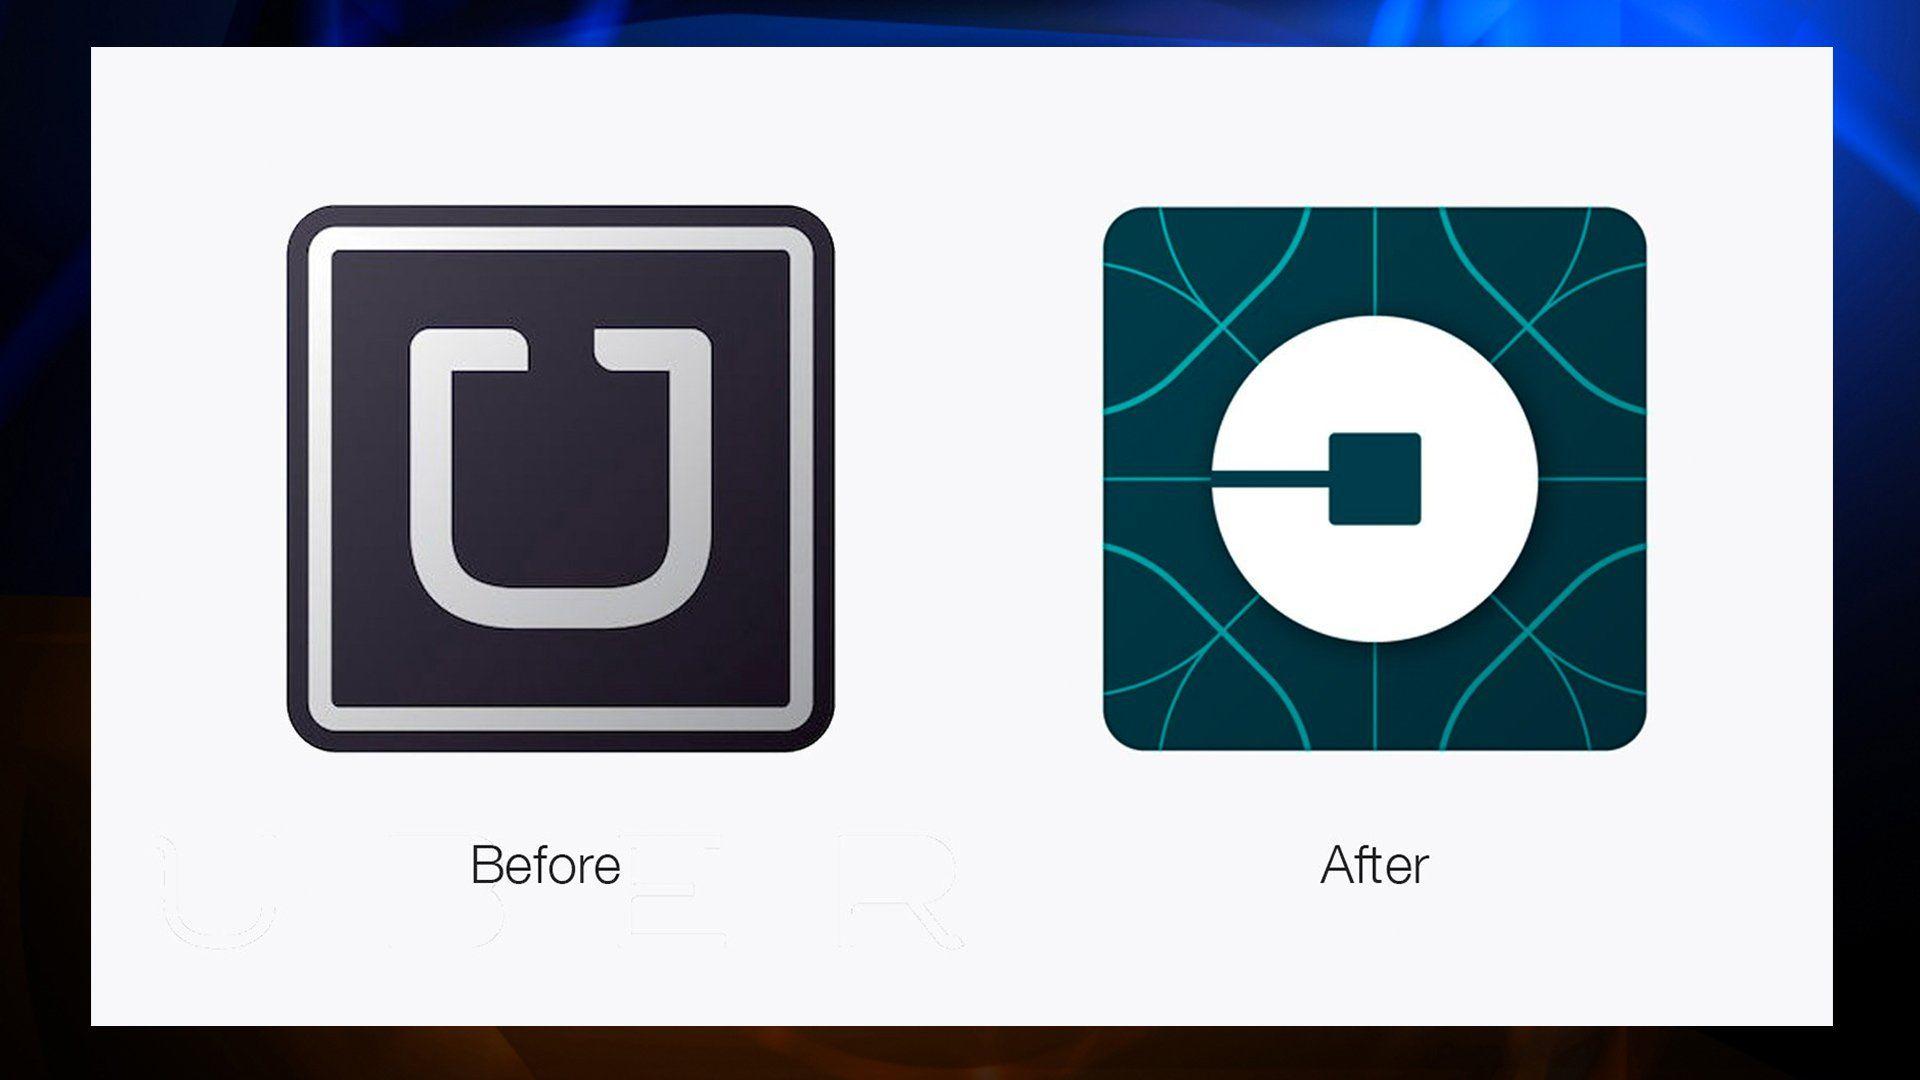 Uber White Logo - Uber Drops White and Black U Logo, Introduces New App Image | KTLA